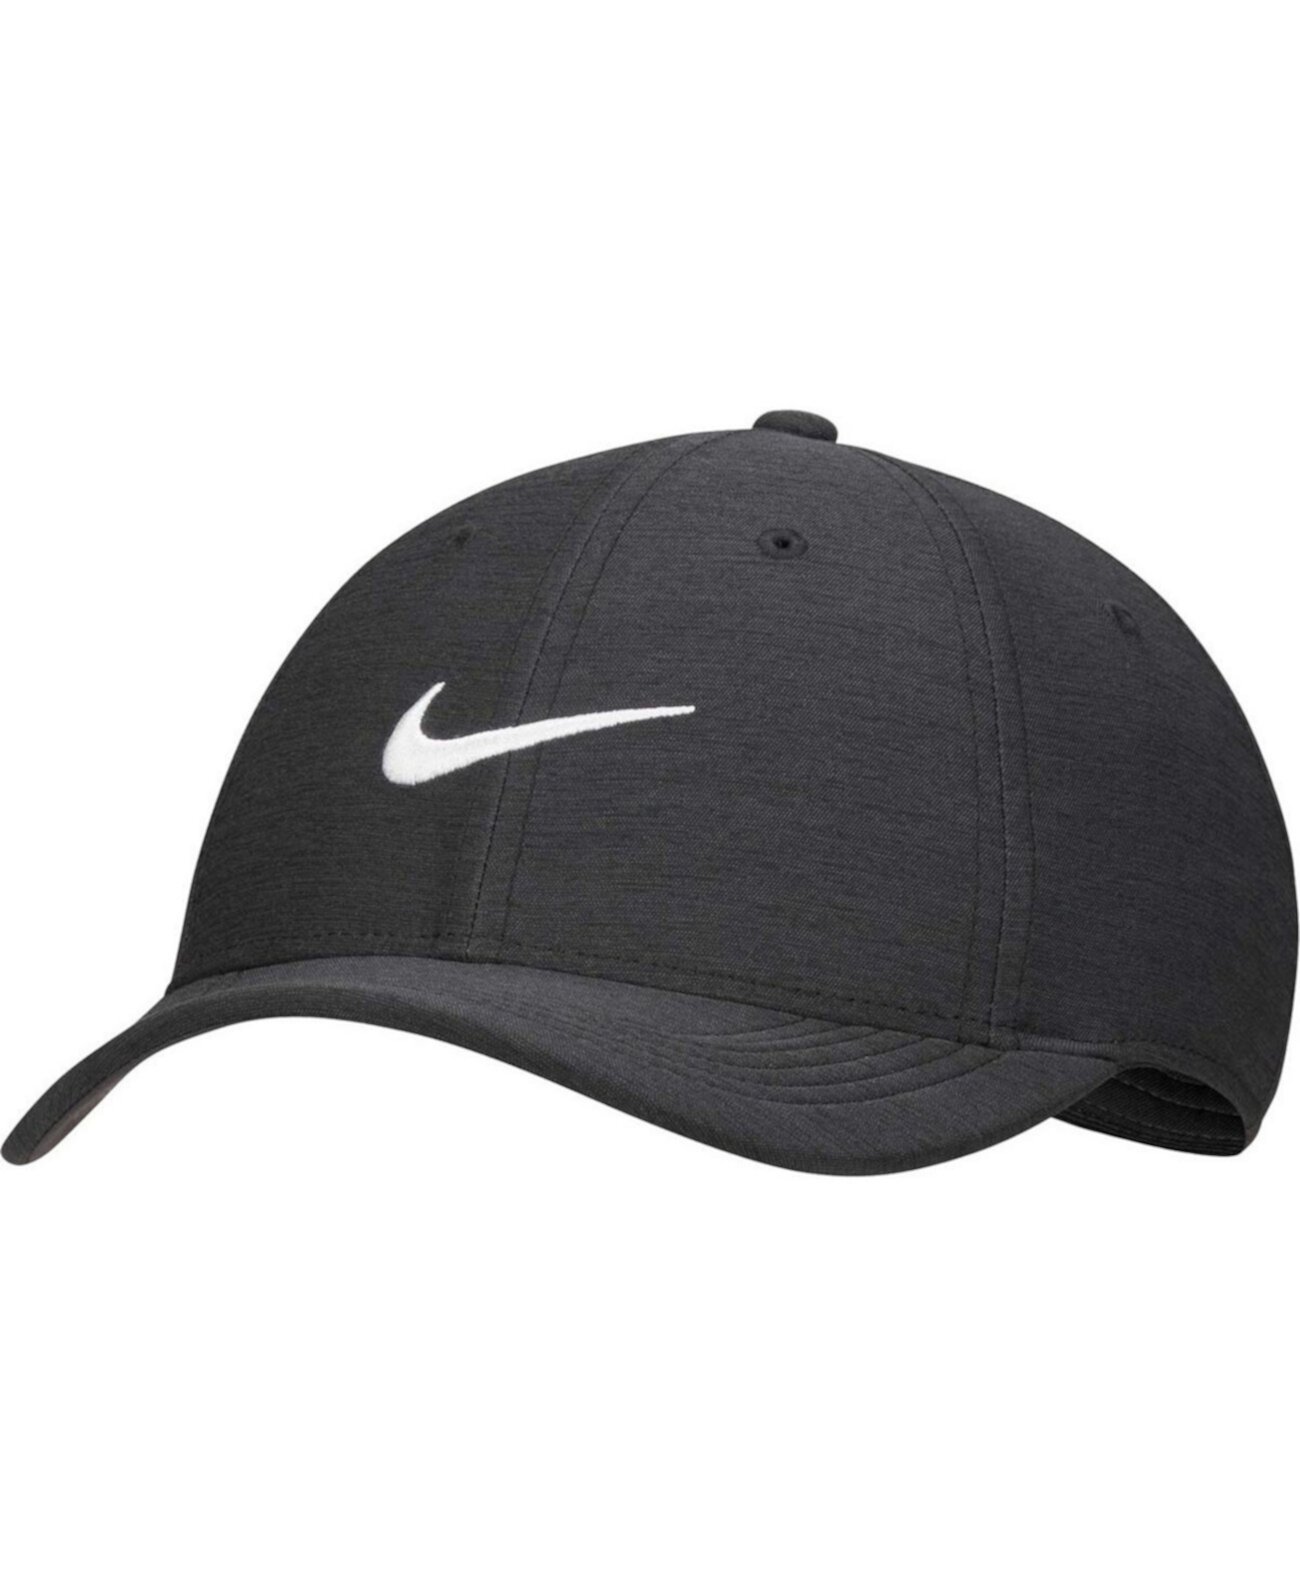 Новинка мужской регулируемой шляпы Club Performance Nike